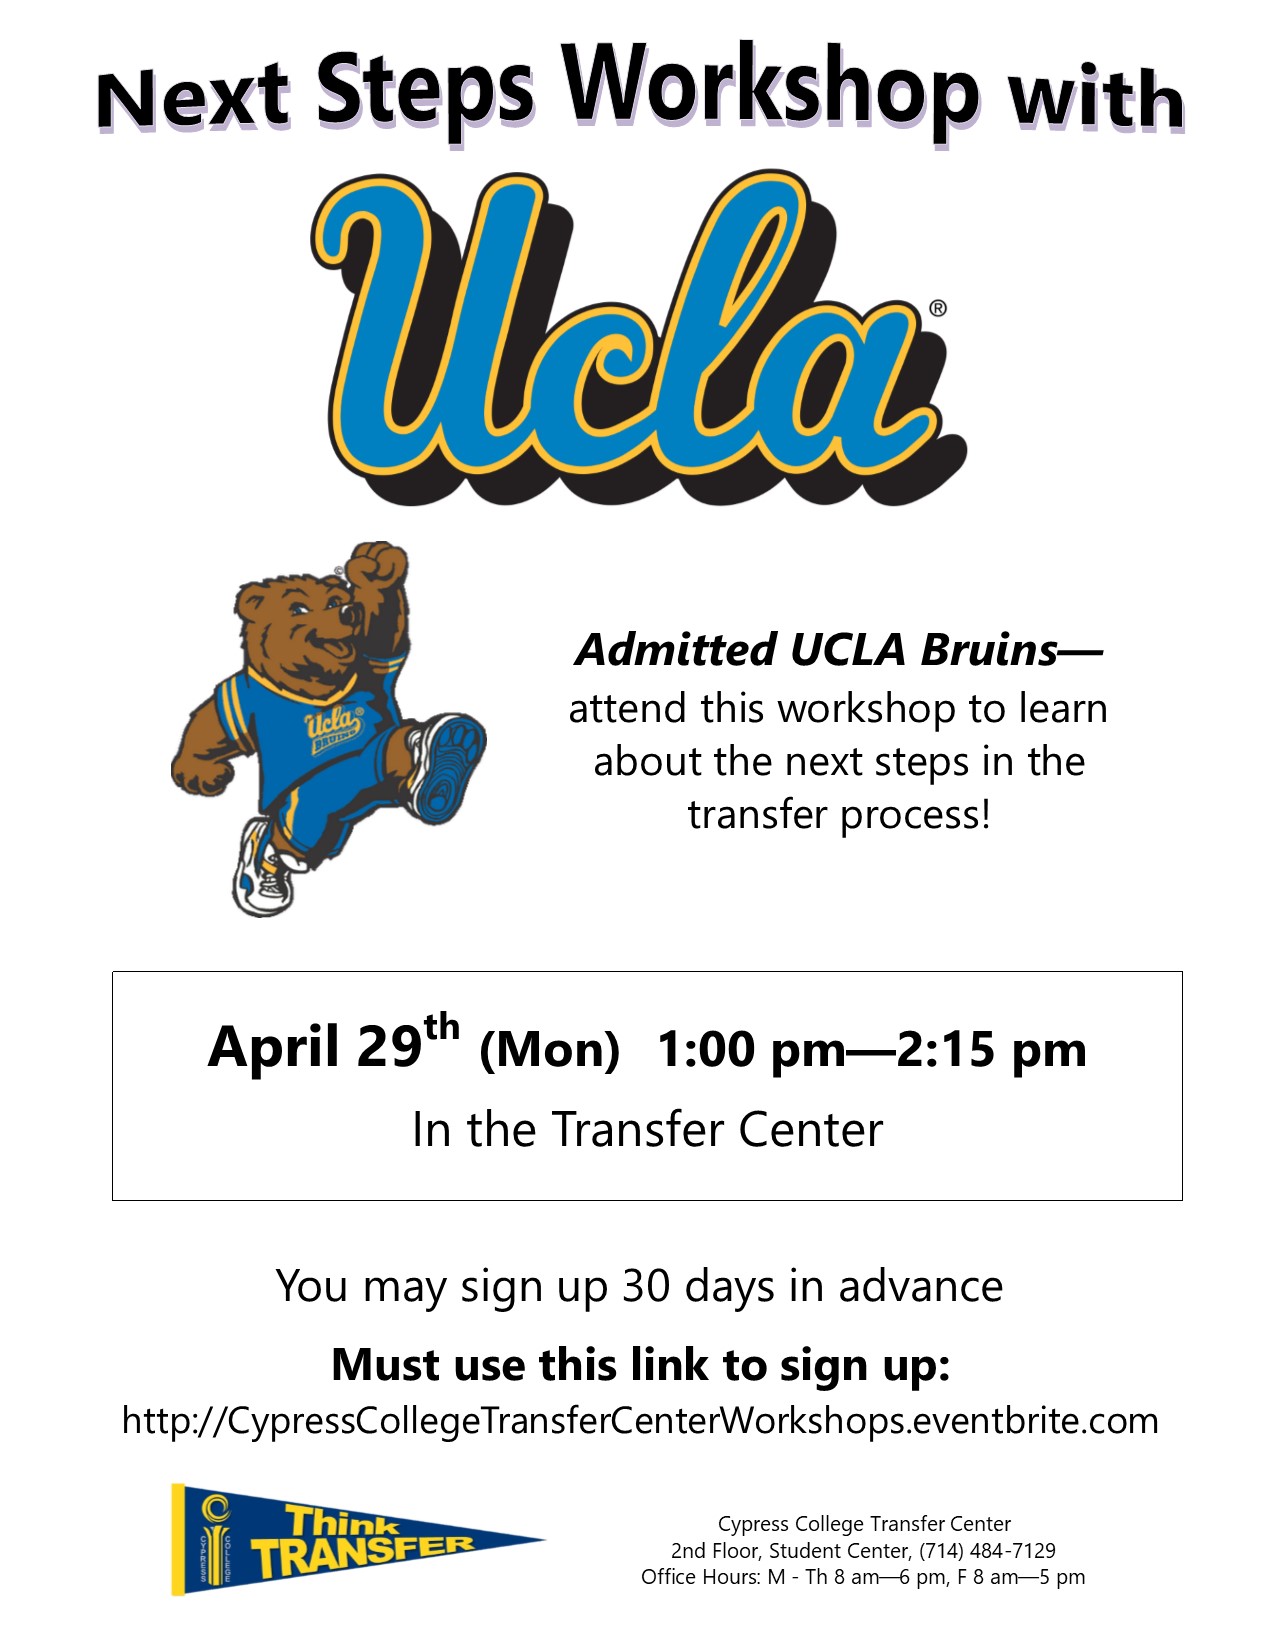 Next Steps Workshop with UCLA flyer.